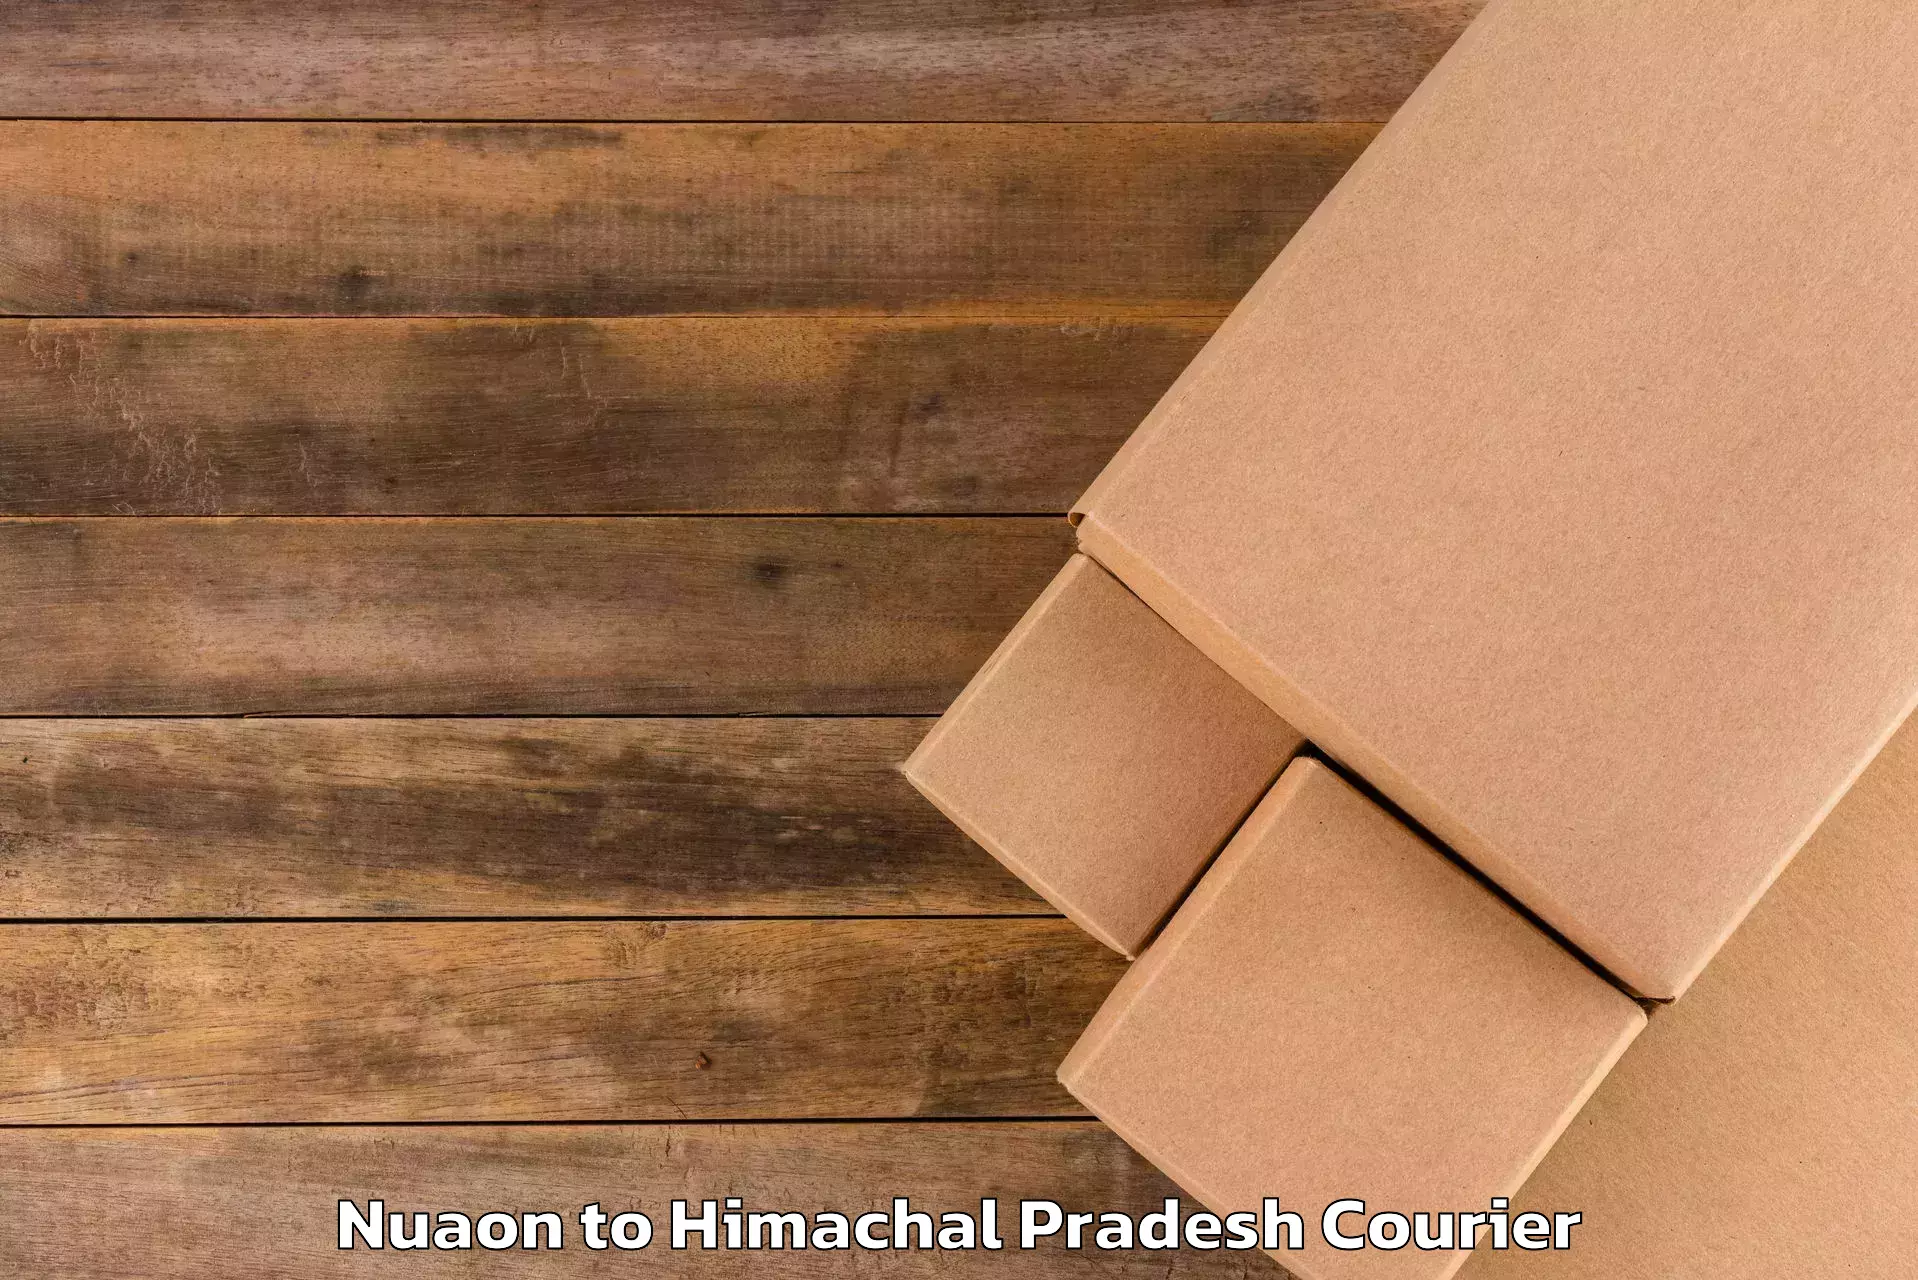 Luggage transfer service Nuaon to Himachal Pradesh